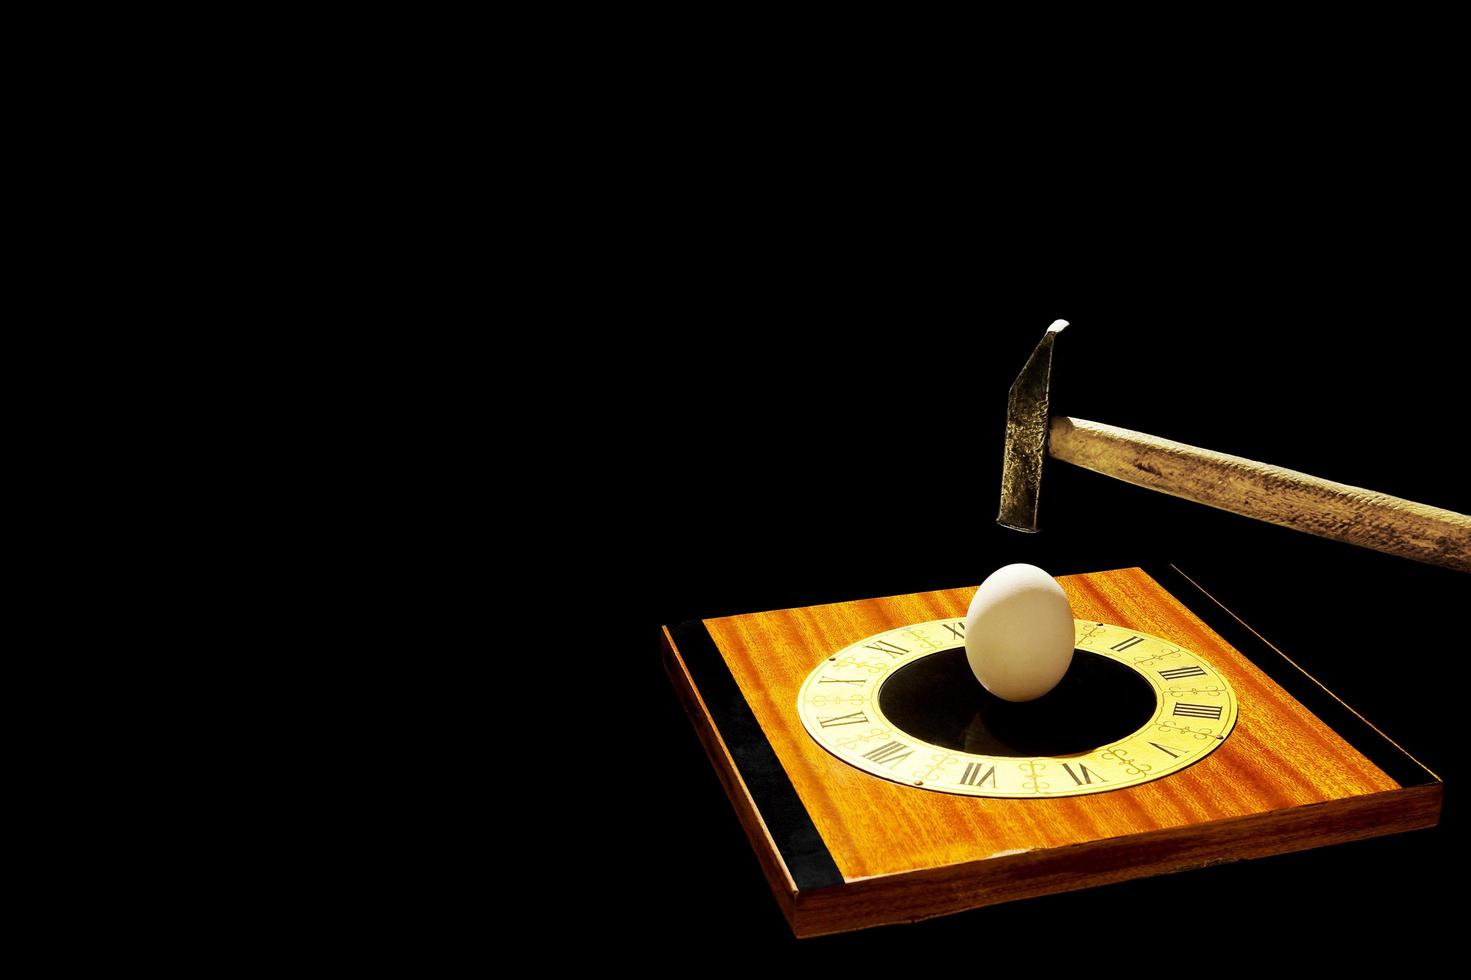 objetos abstractos aislados sobre fondo negro. un martillo rompiendo un huevo en una esfera de reloj vintage. foto